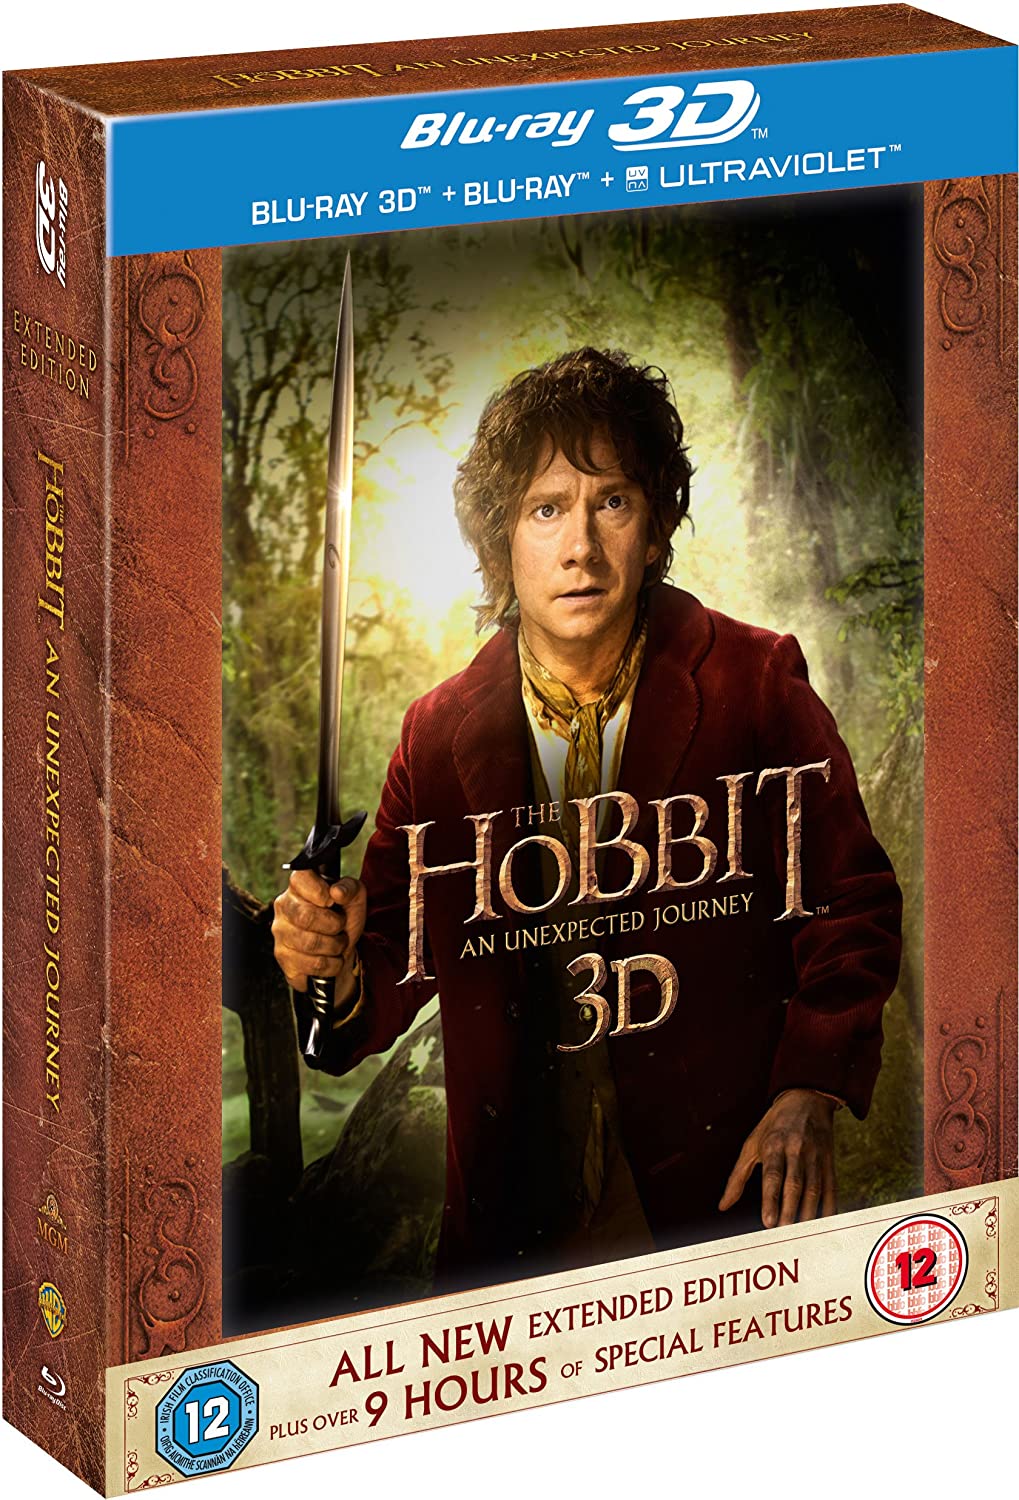 Lo Hobbit: Un Viaggio Inaspettato - Edizione Estesa [Blu-ray 3D + Blu-ray] [201